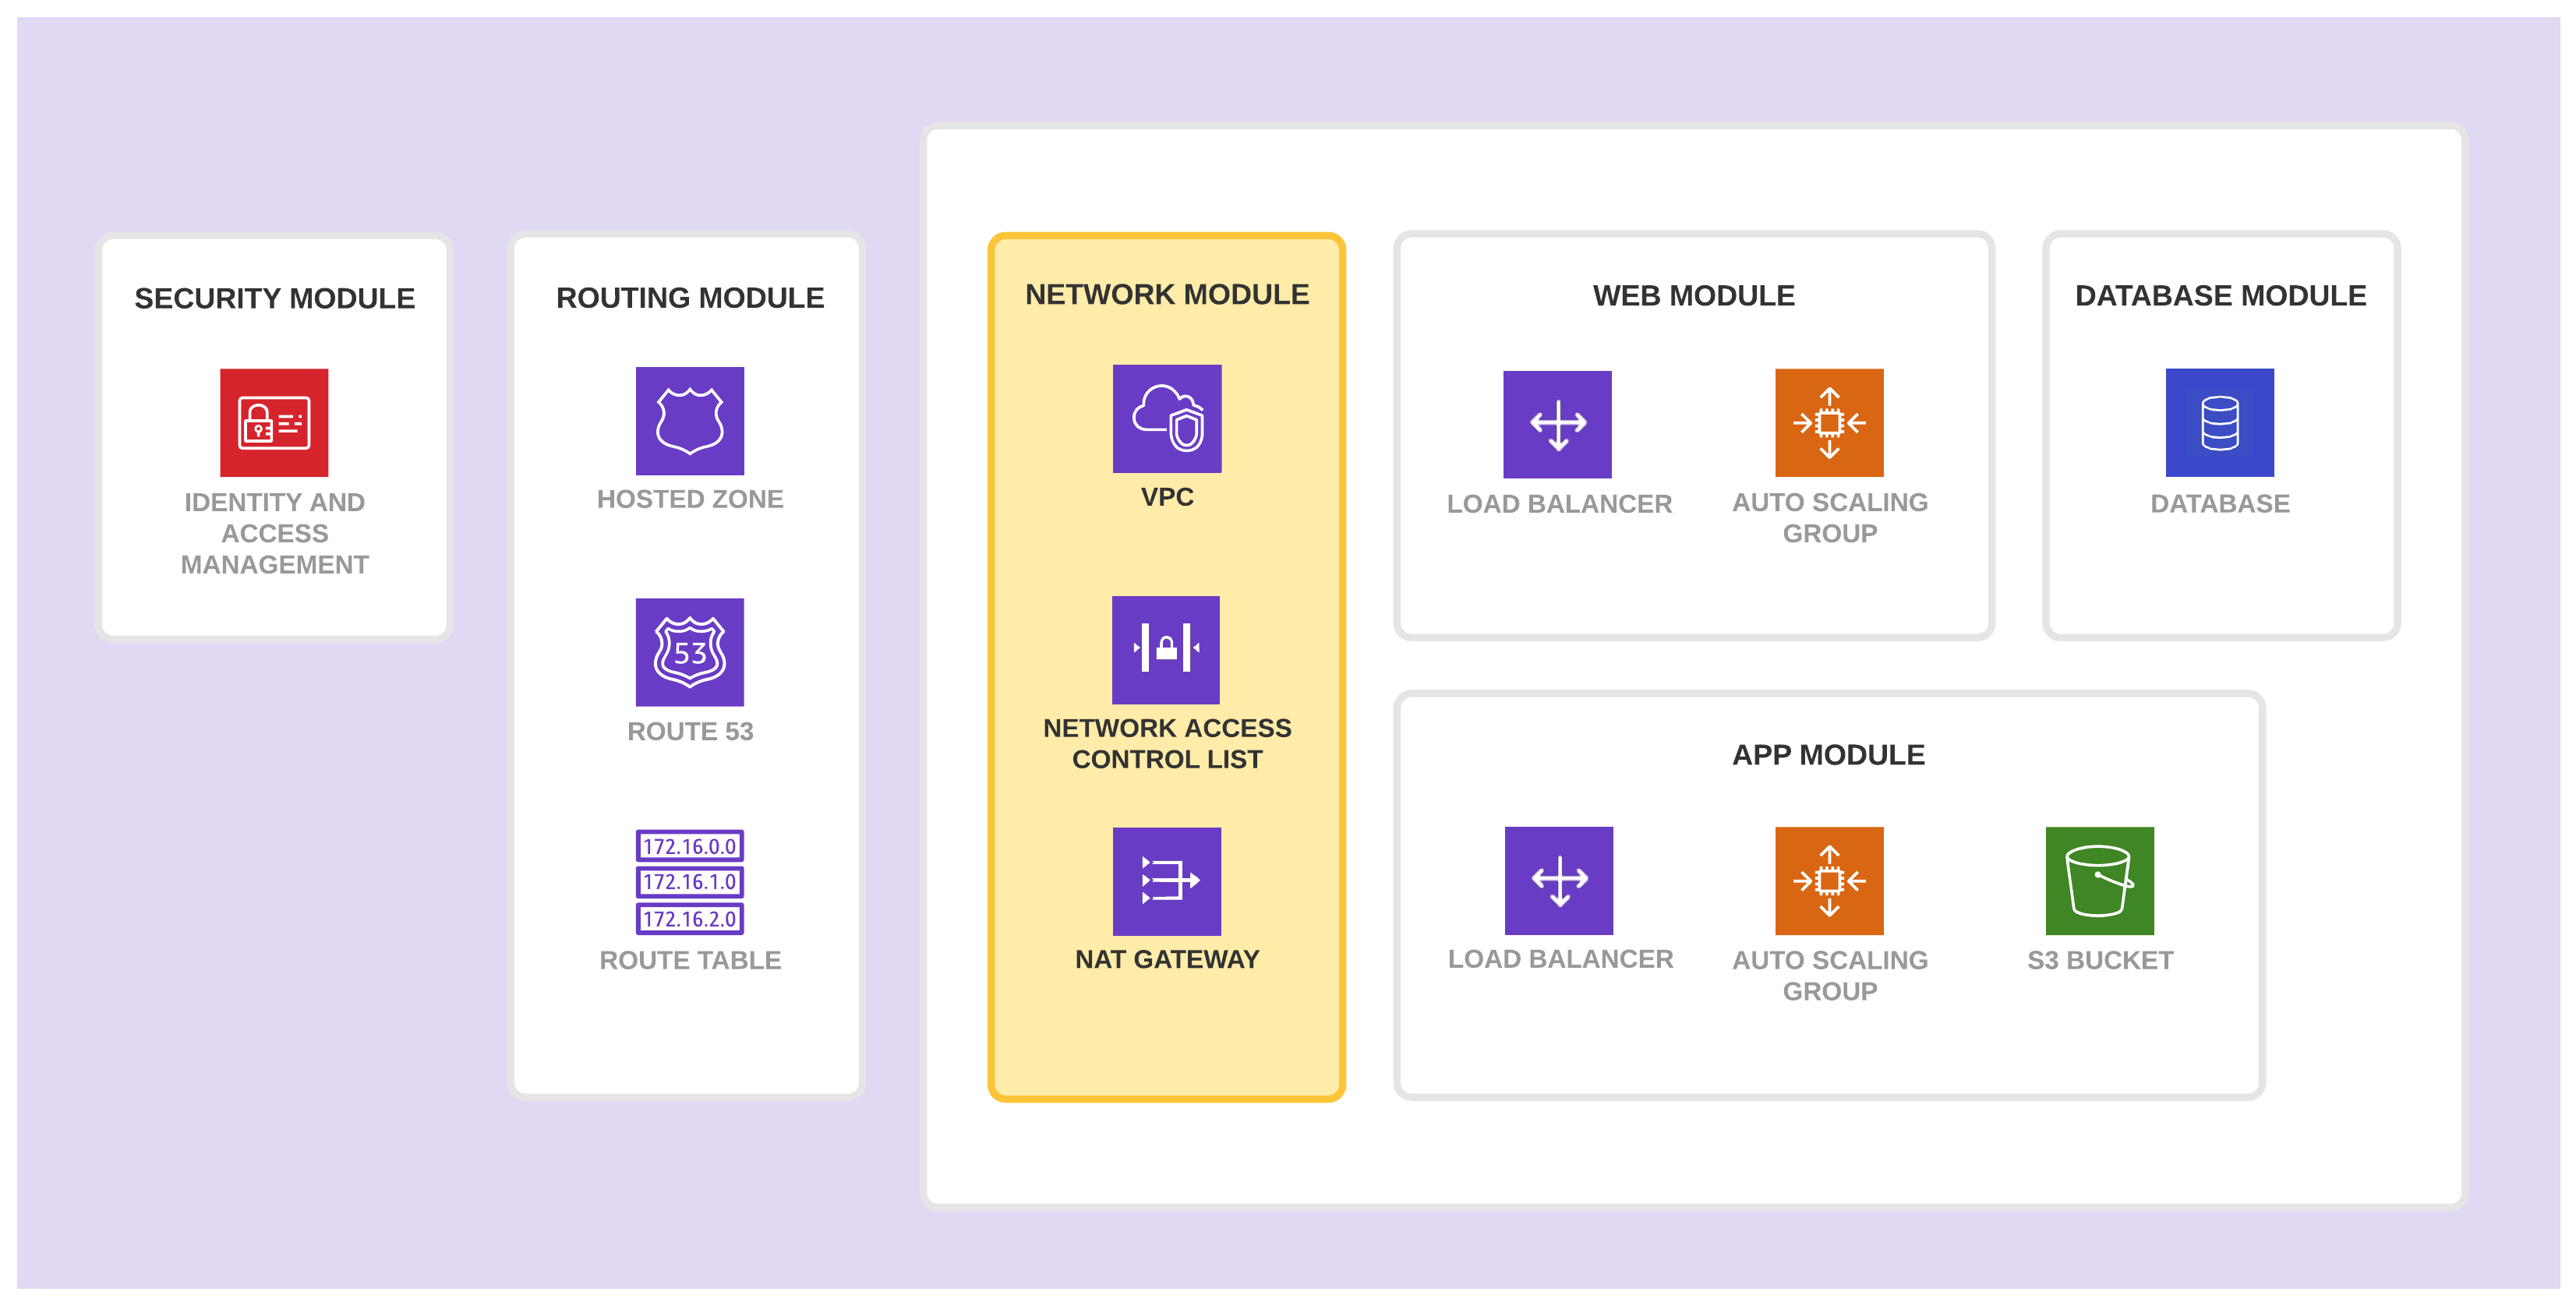 Network Module